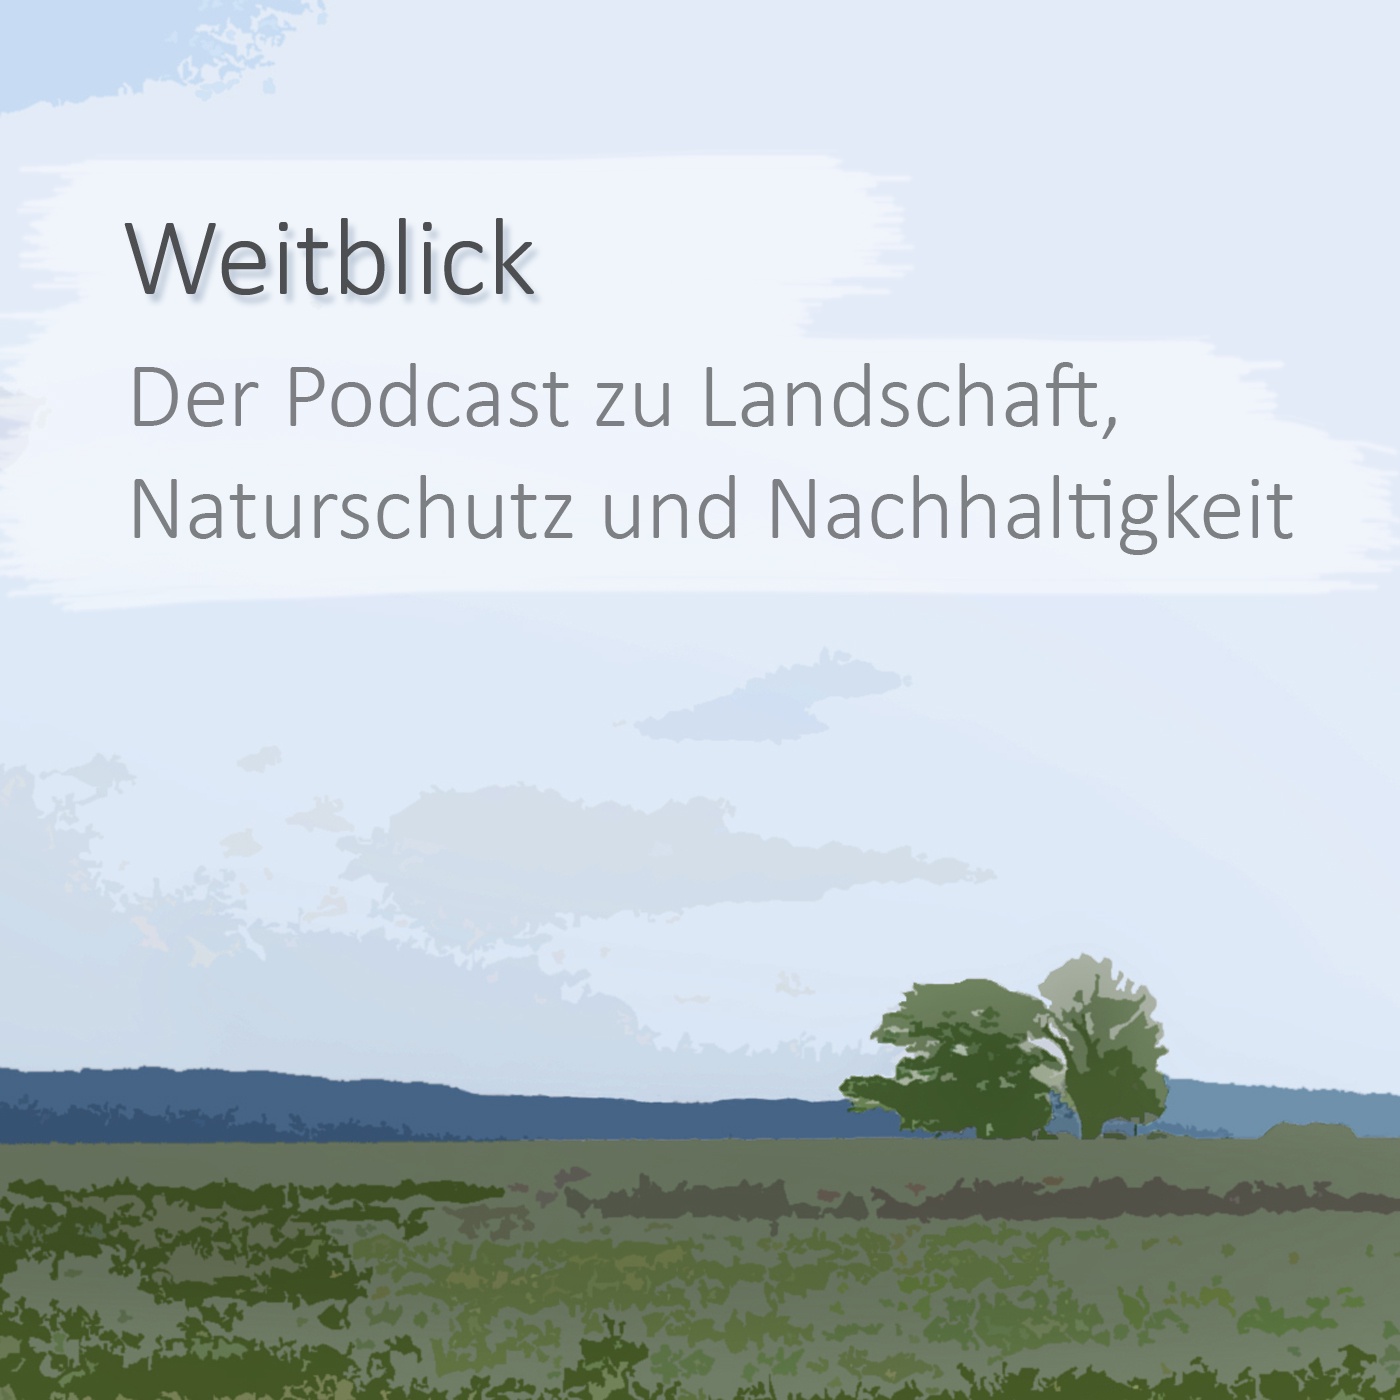 Weitblick - Der Podcast zu Landschaft, Naturschutz und Nachhaltigkeit